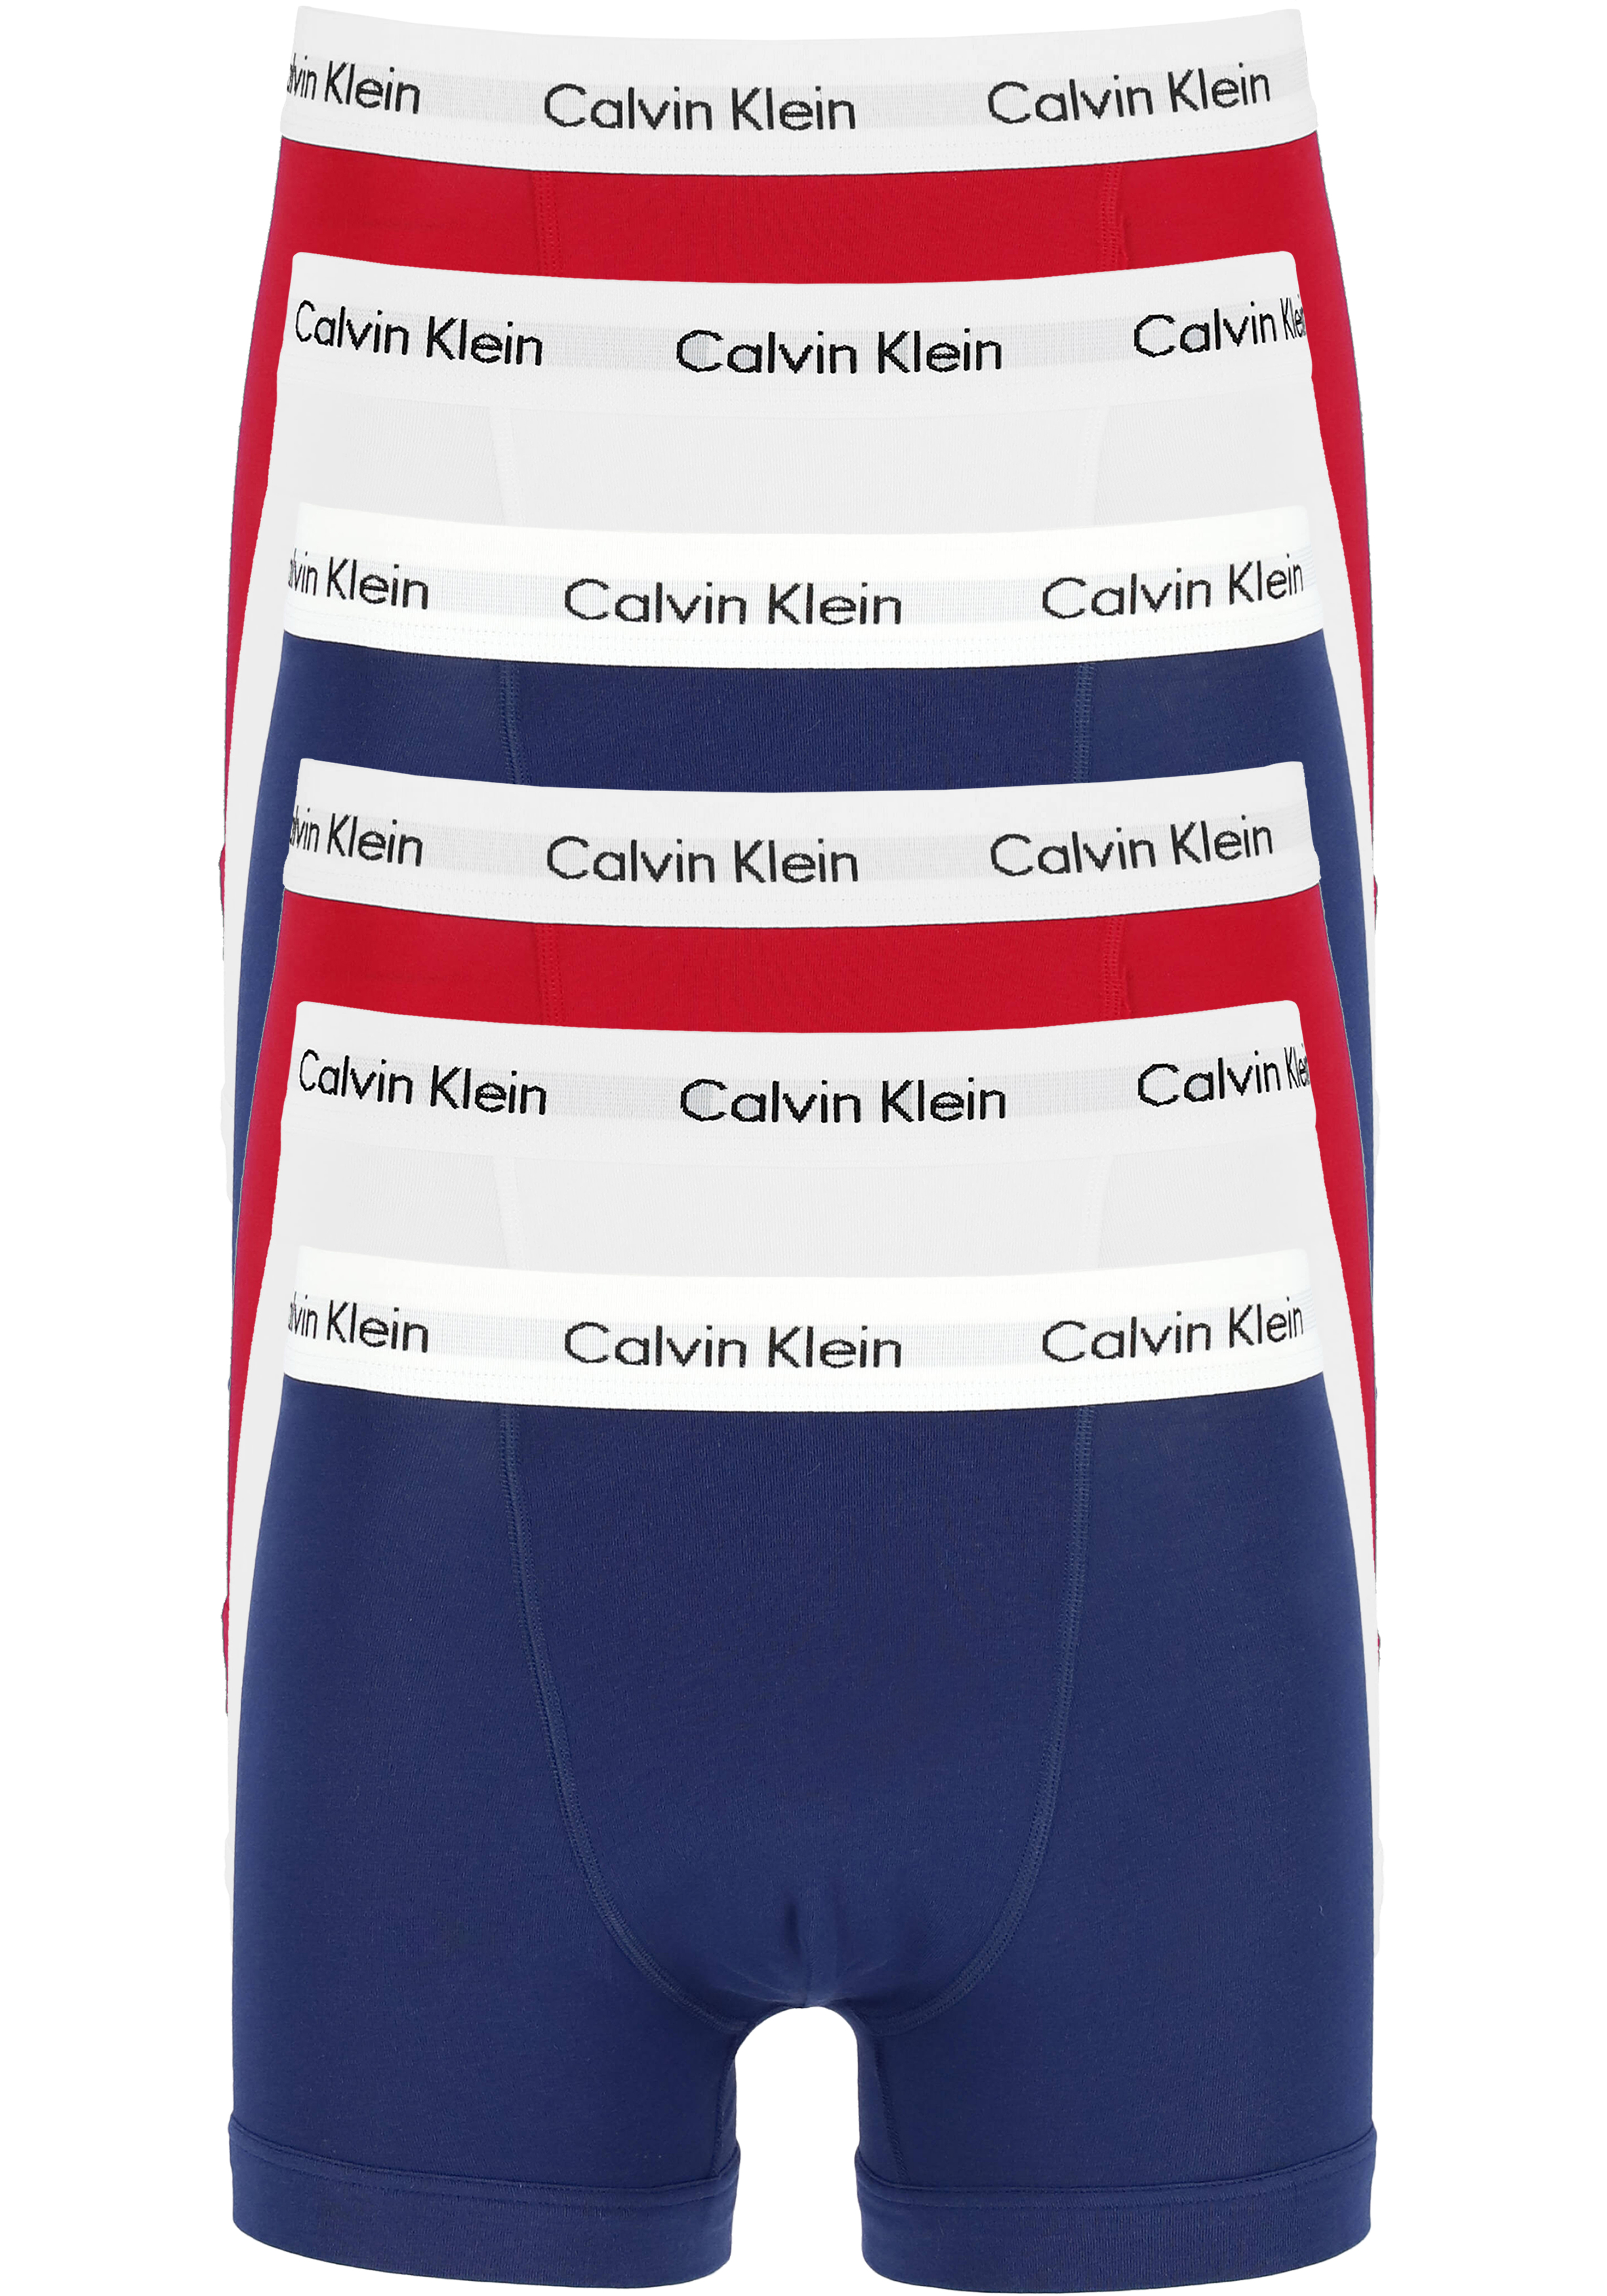 Actie 6-pack: Calvin Klein trunks, heren boxers normale lengte, rood,... -  Nieuwe voorjaarscollectie